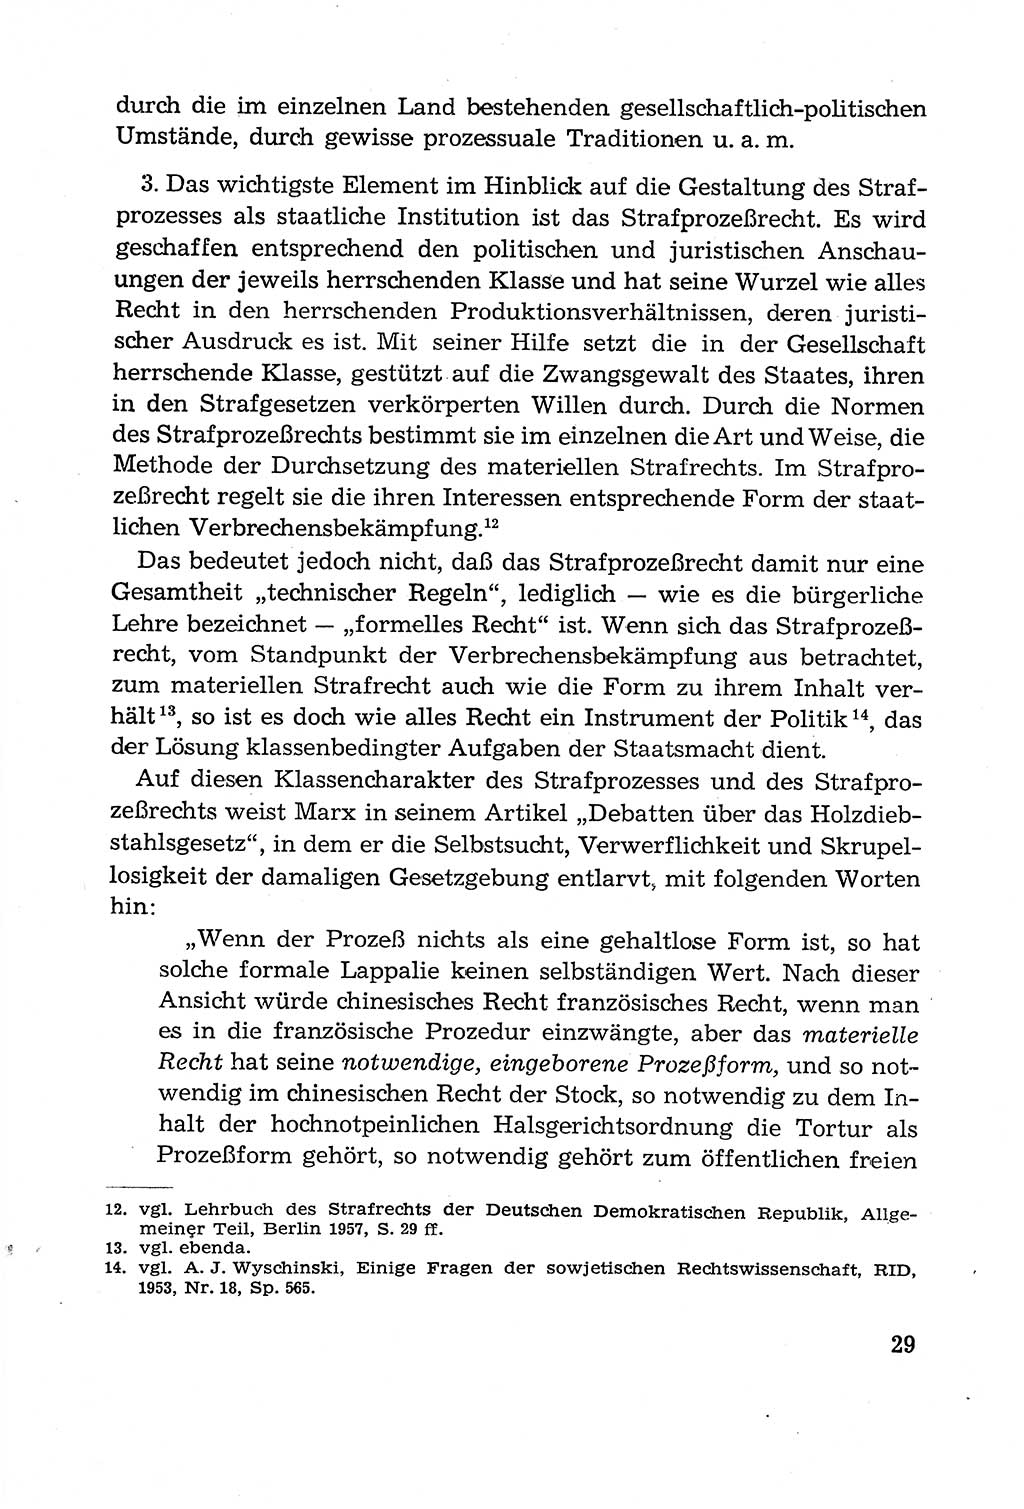 Leitfaden des Strafprozeßrechts der Deutschen Demokratischen Republik (DDR) 1959, Seite 29 (LF StPR DDR 1959, S. 29)